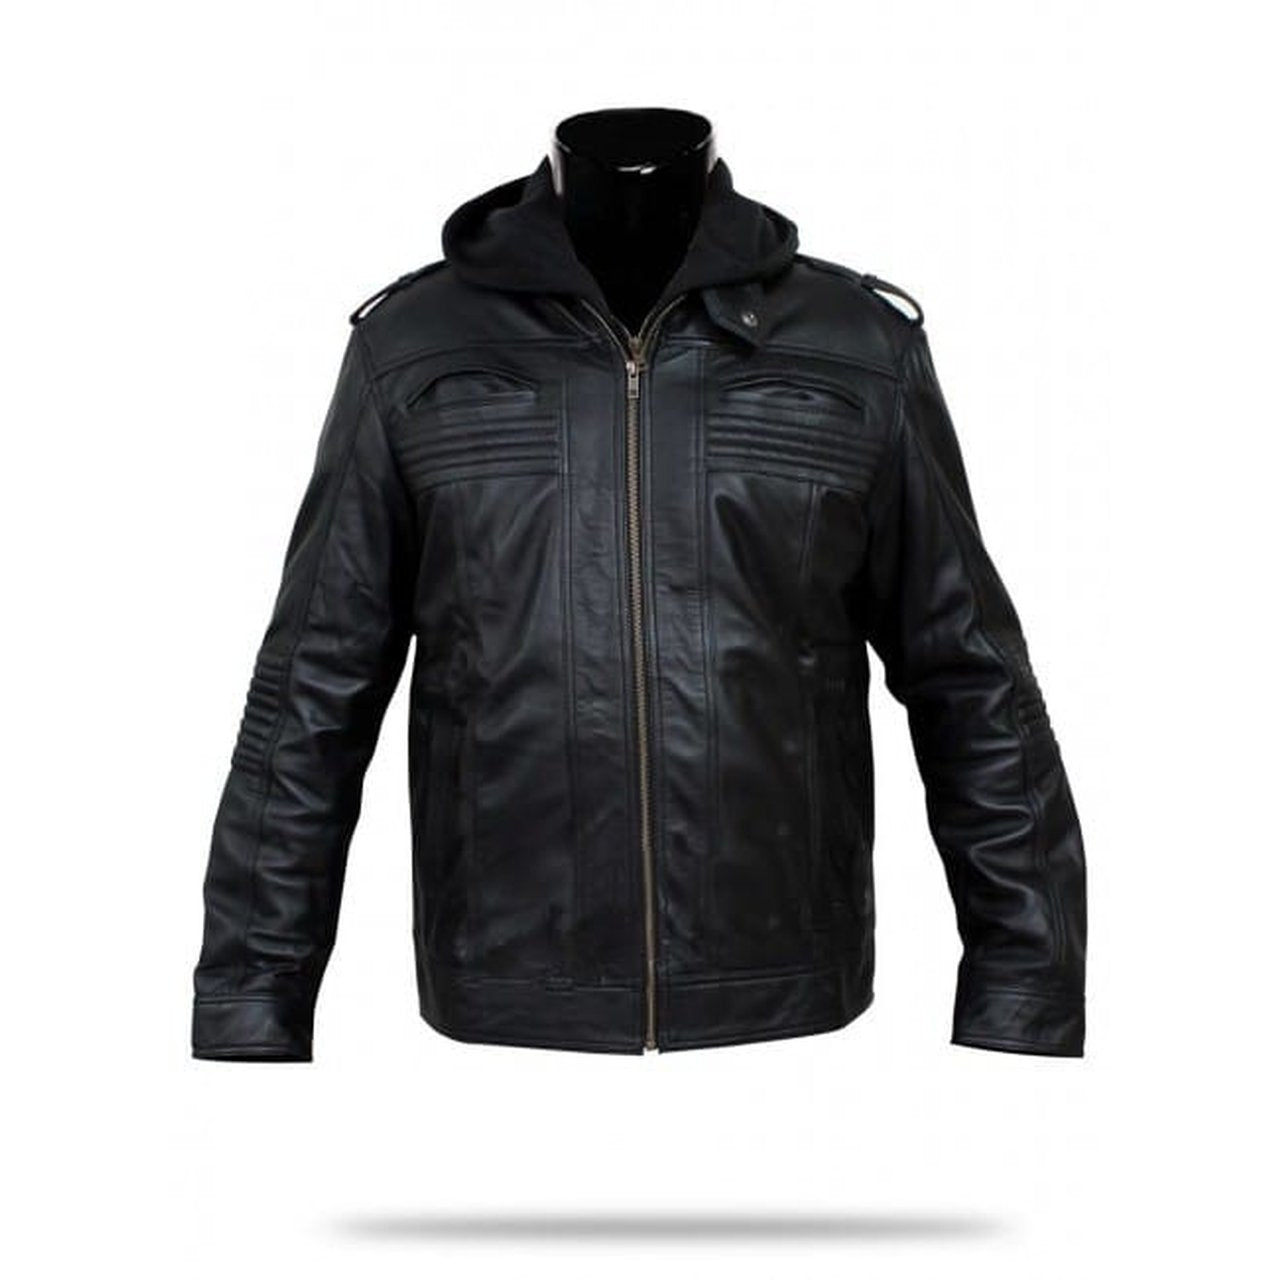 Stylish Black Leather Jacket Men - Leather Jacket